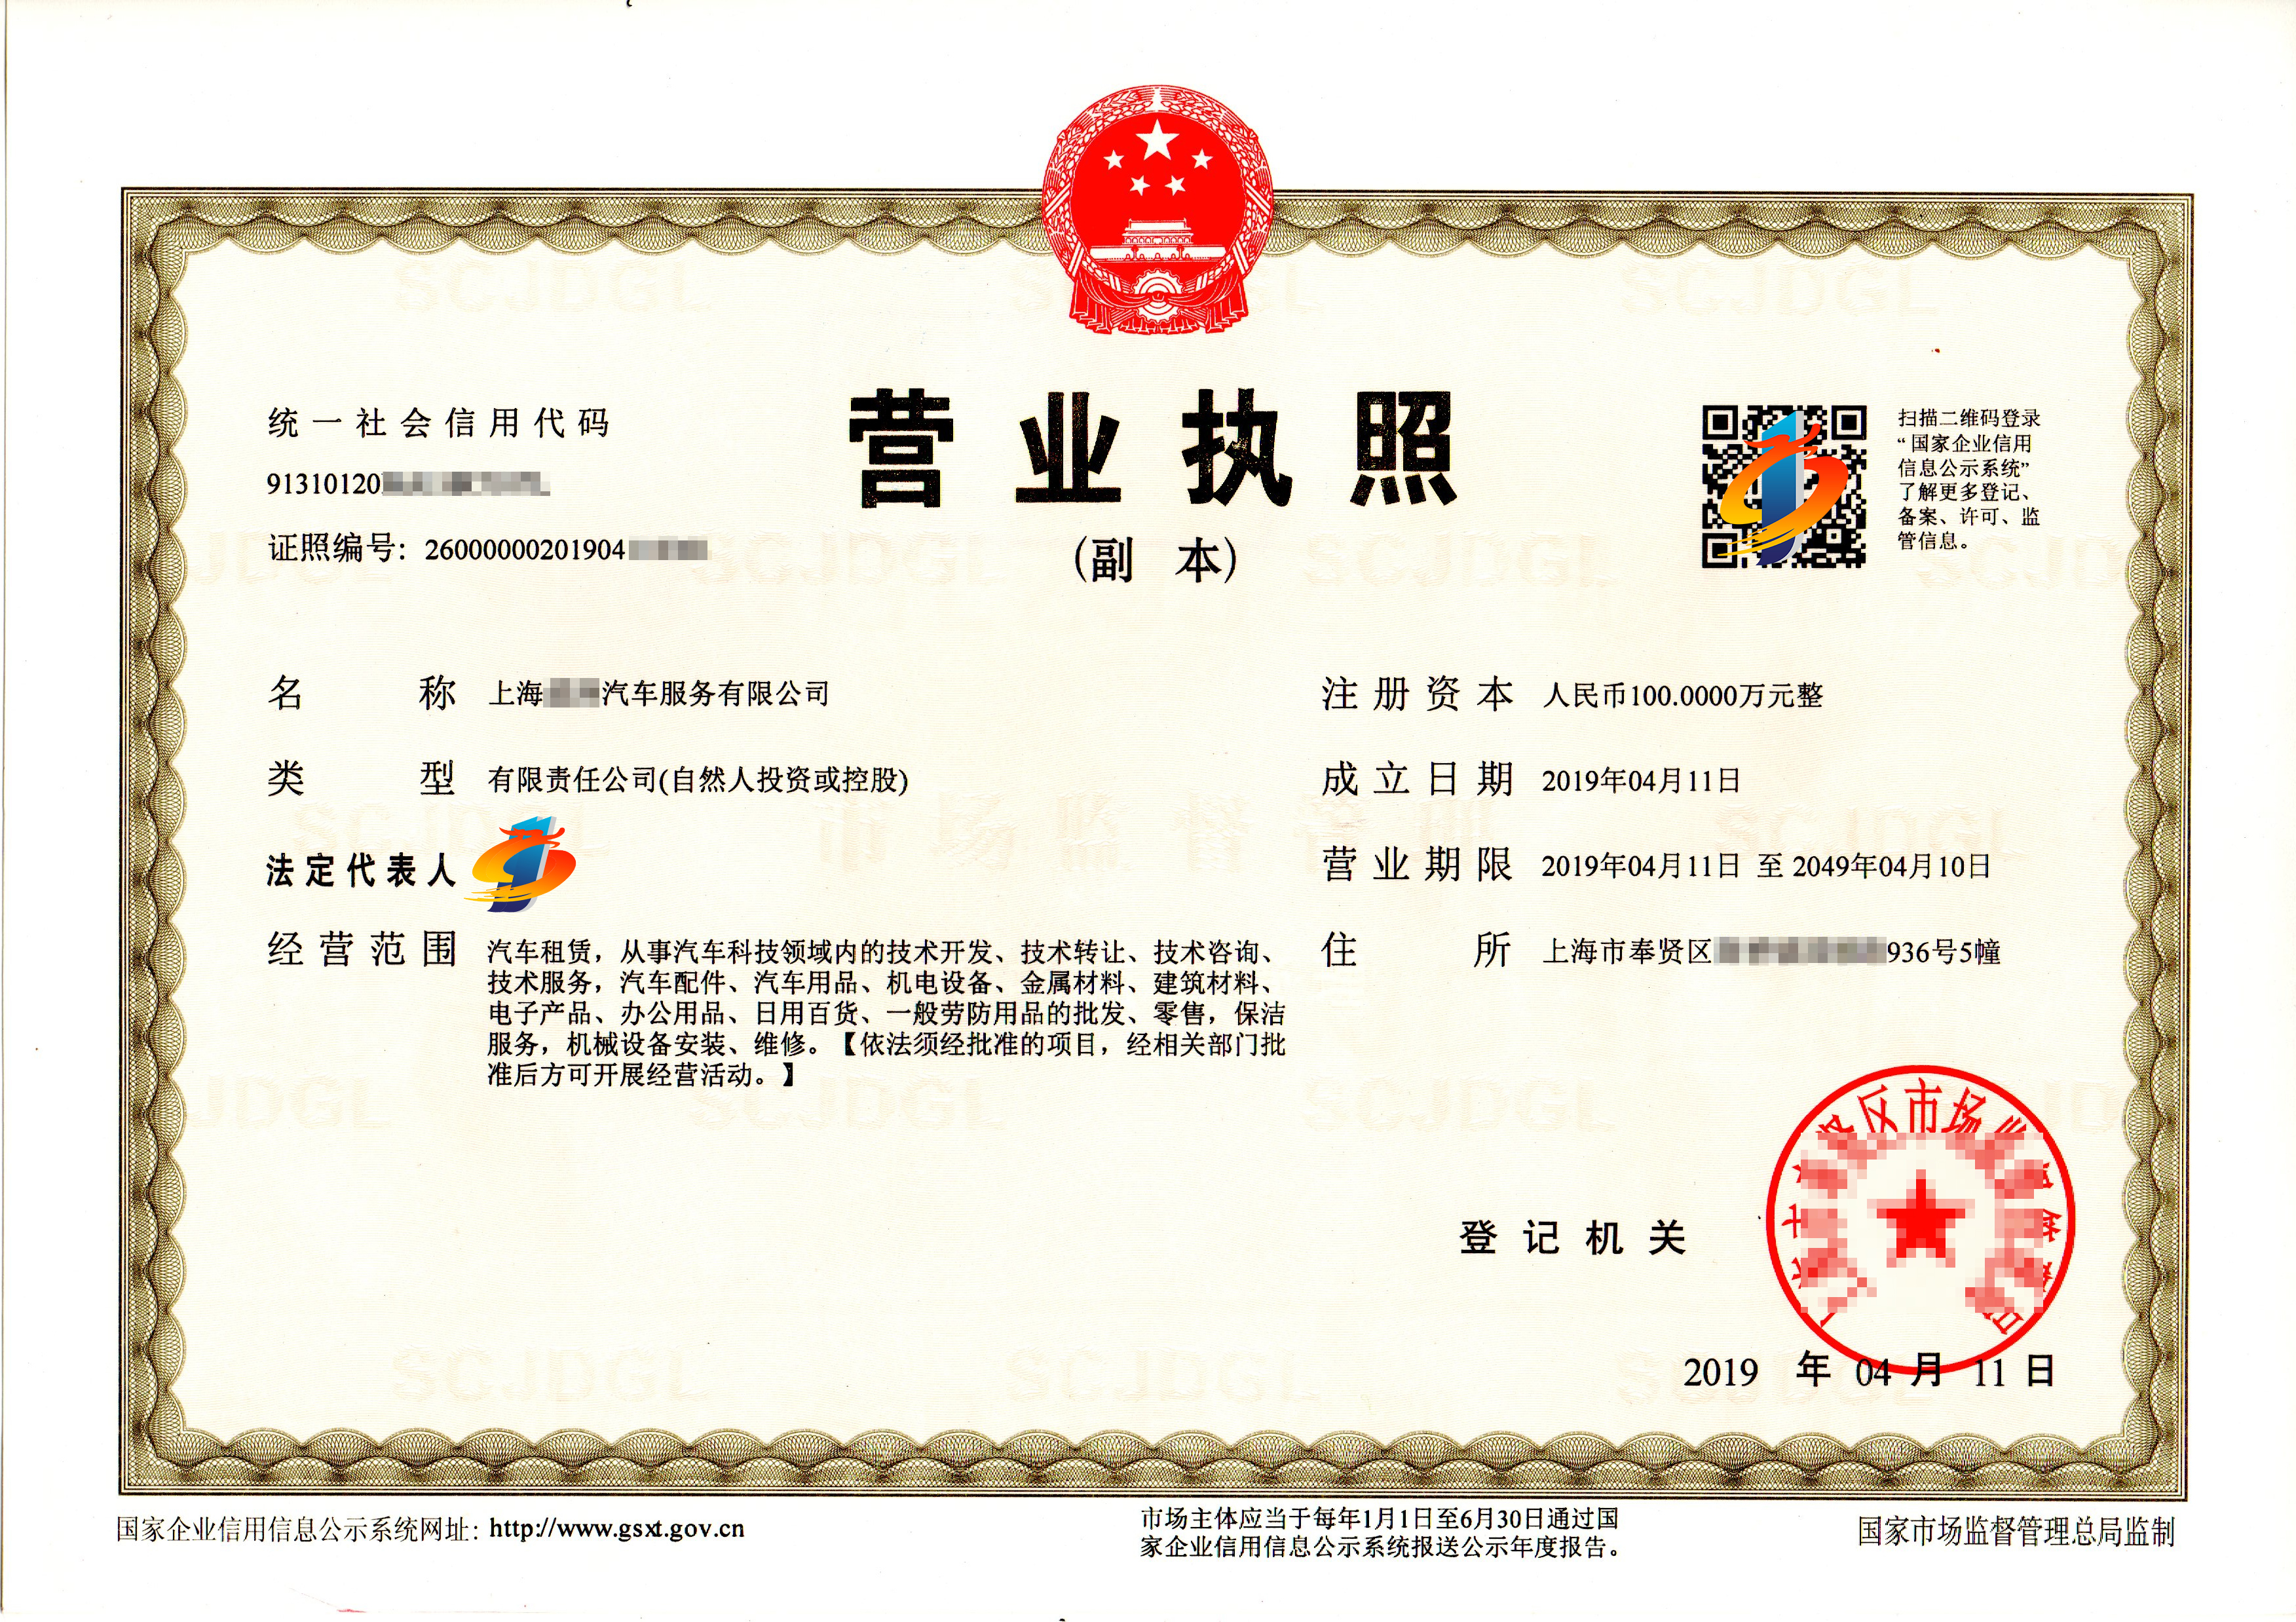 客户注册上海家具公司